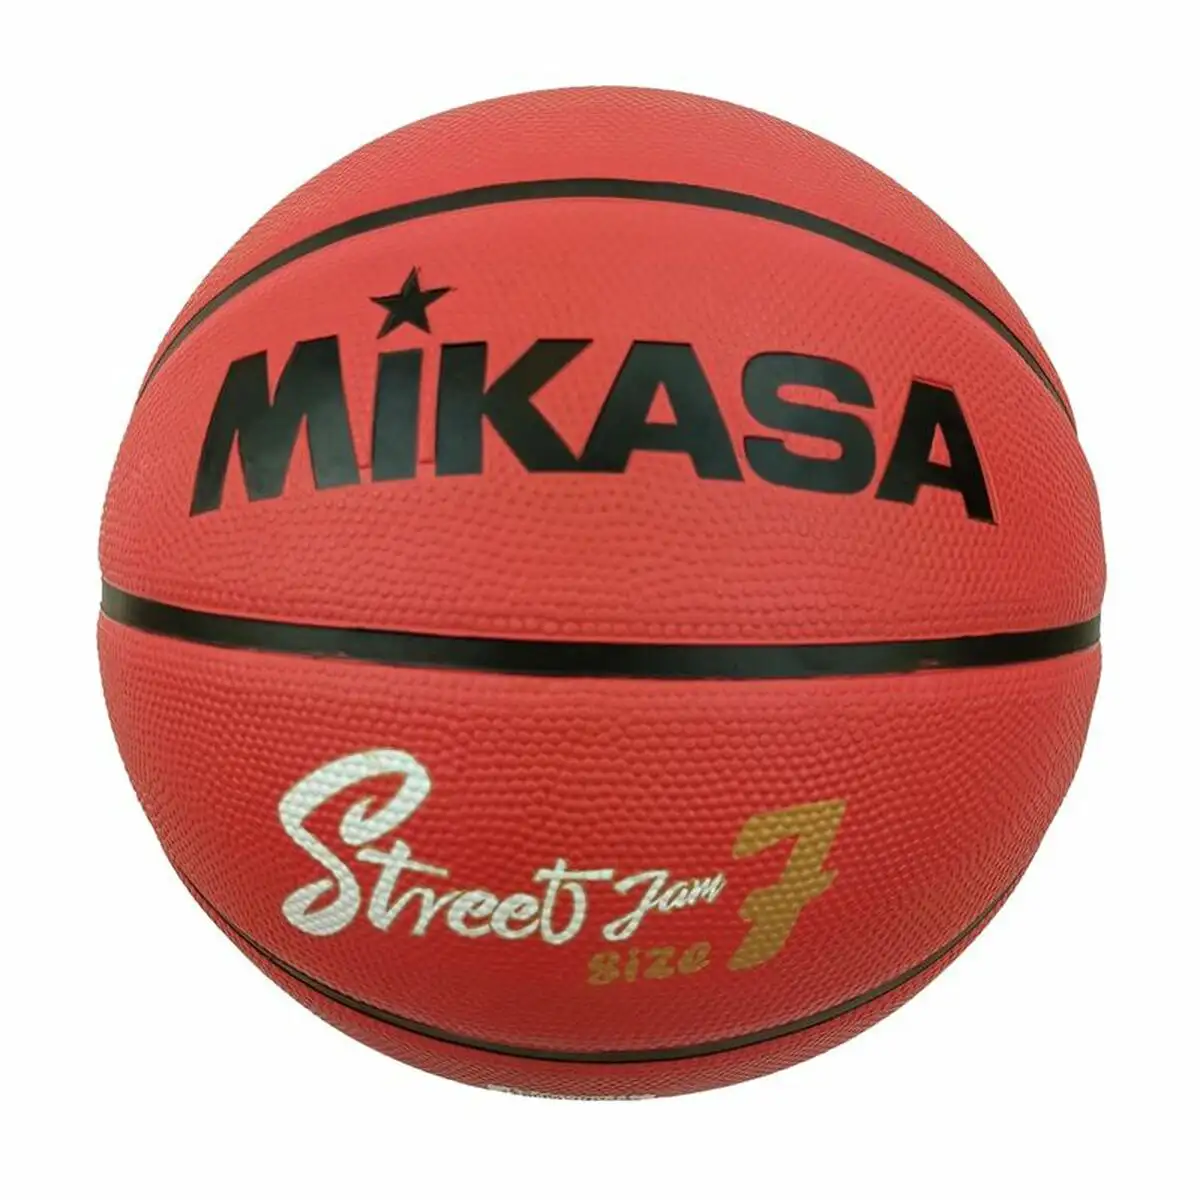 Ballon de basket mikasa bb734c orange 7_6274. Bienvenue sur DIAYTAR SENEGAL - Où Chaque Produit a son Histoire. Découvrez notre sélection unique et choisissez des articles qui racontent la richesse culturelle et artistique du Sénégal.